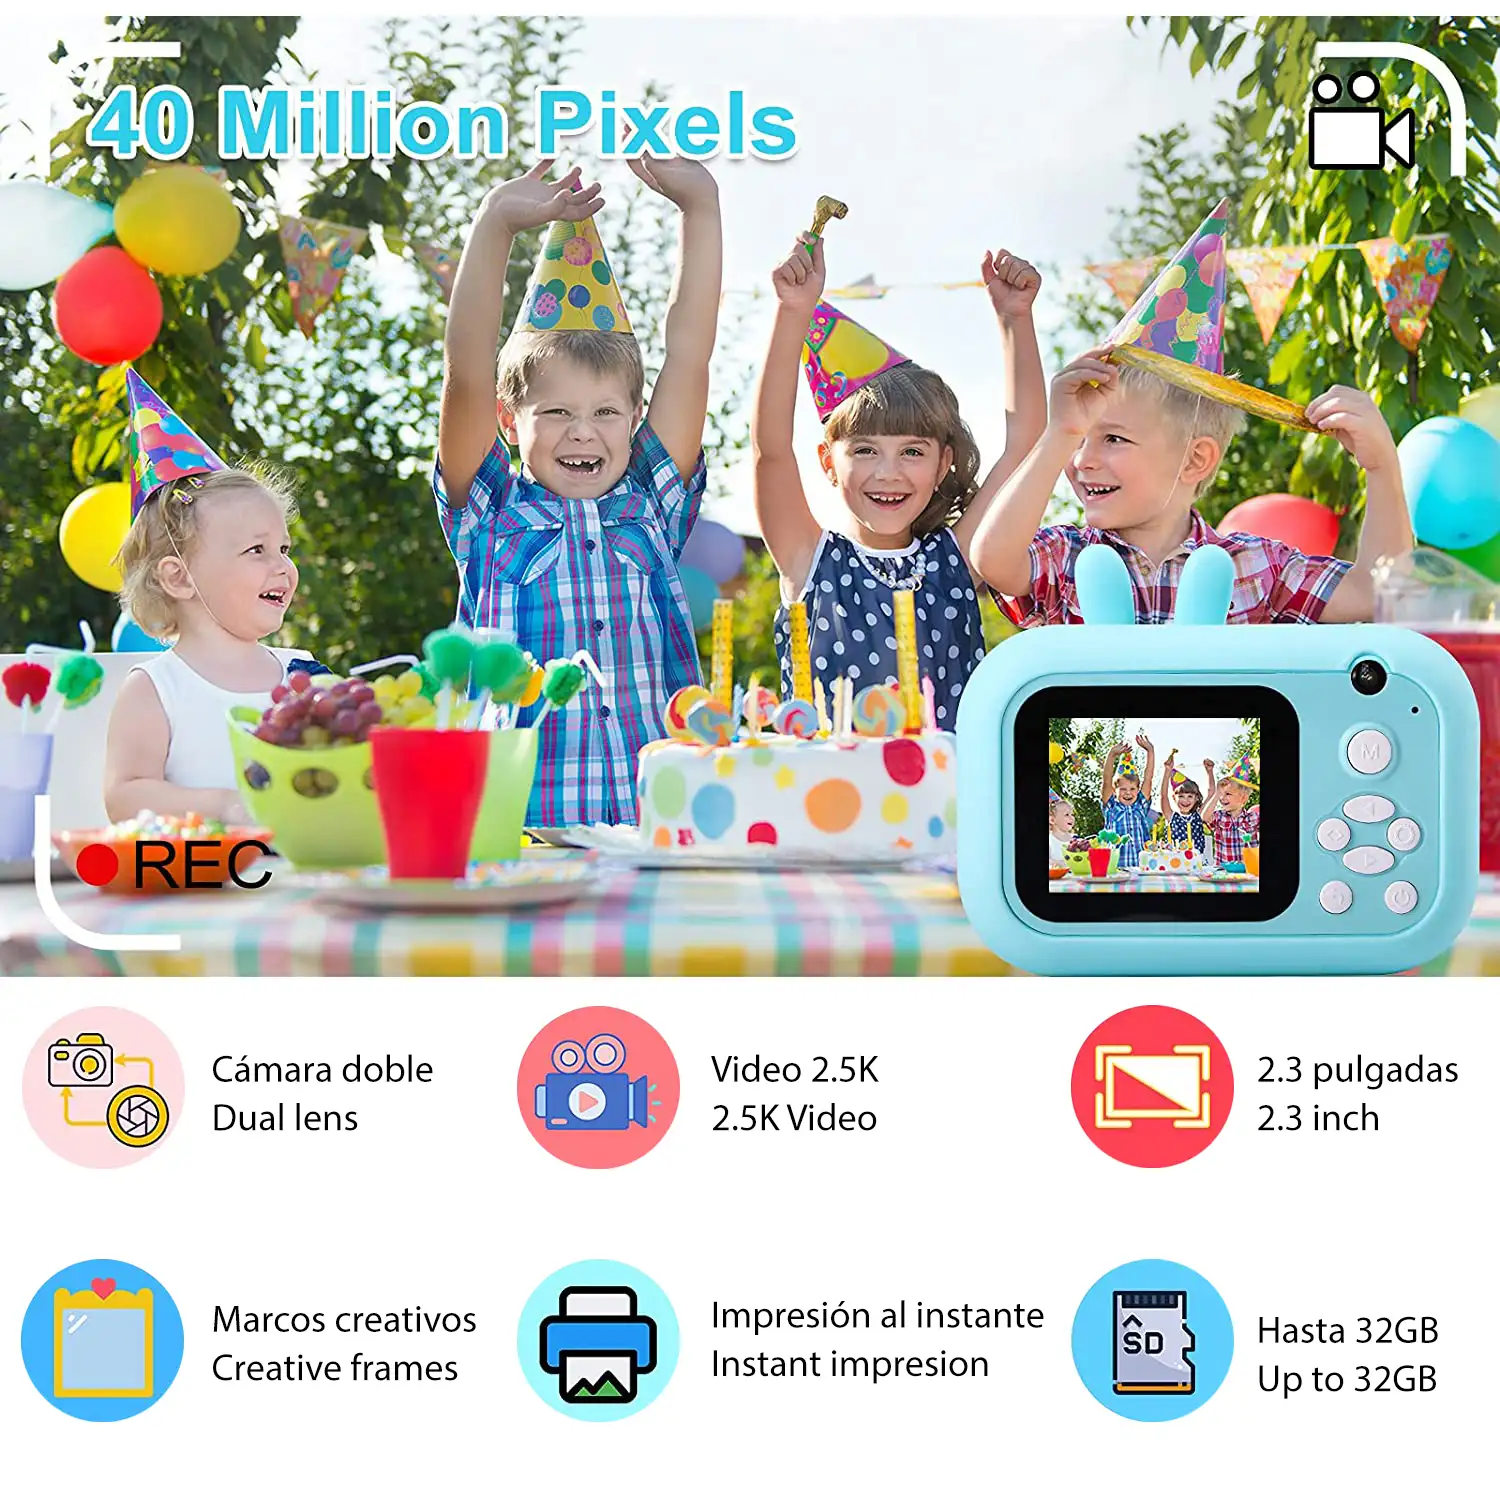 Cámara Conejito digital de fotos 40mpx y video 2,5K para niños. Impresión instantánea de tus fotos preferidas. Doble cámara, para selfies.